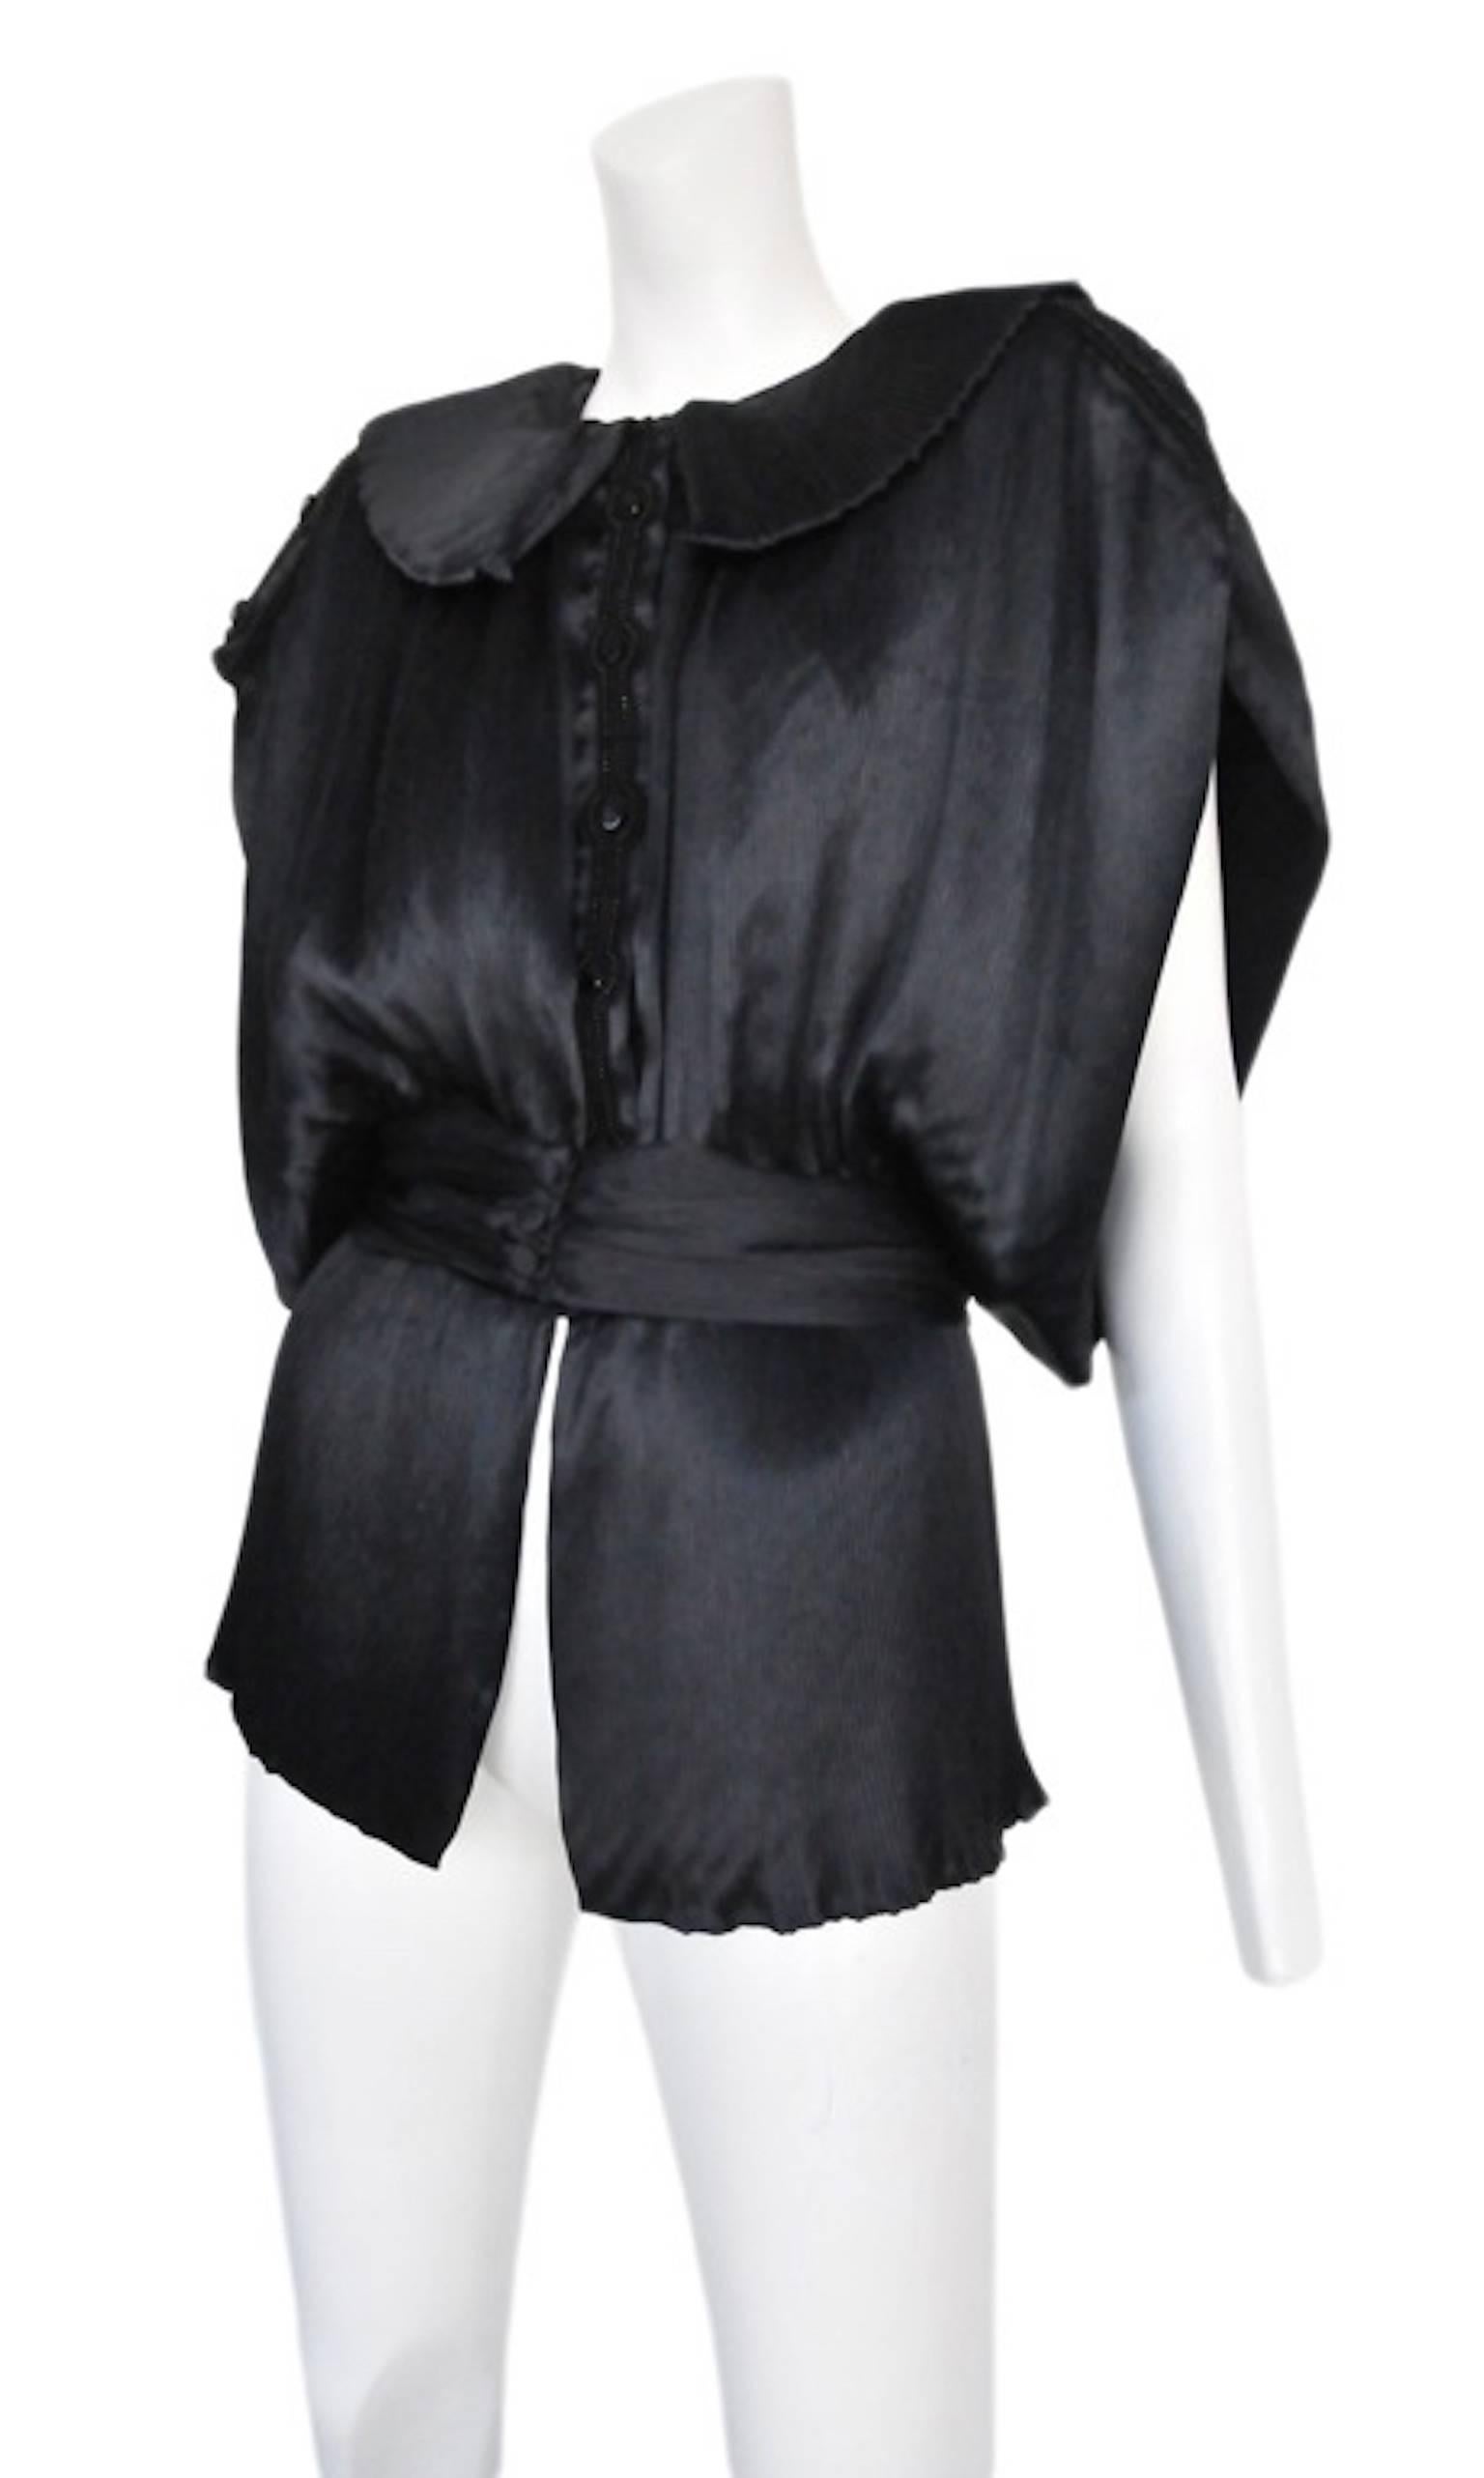 Chemisier en satin noir boutonné d'inspiration kimono avec un large col à coins ronds, une ceinture et un détail plissé subtil. Vers 1987.
Veuillez vous renseigner pour obtenir des images supplémentaires.